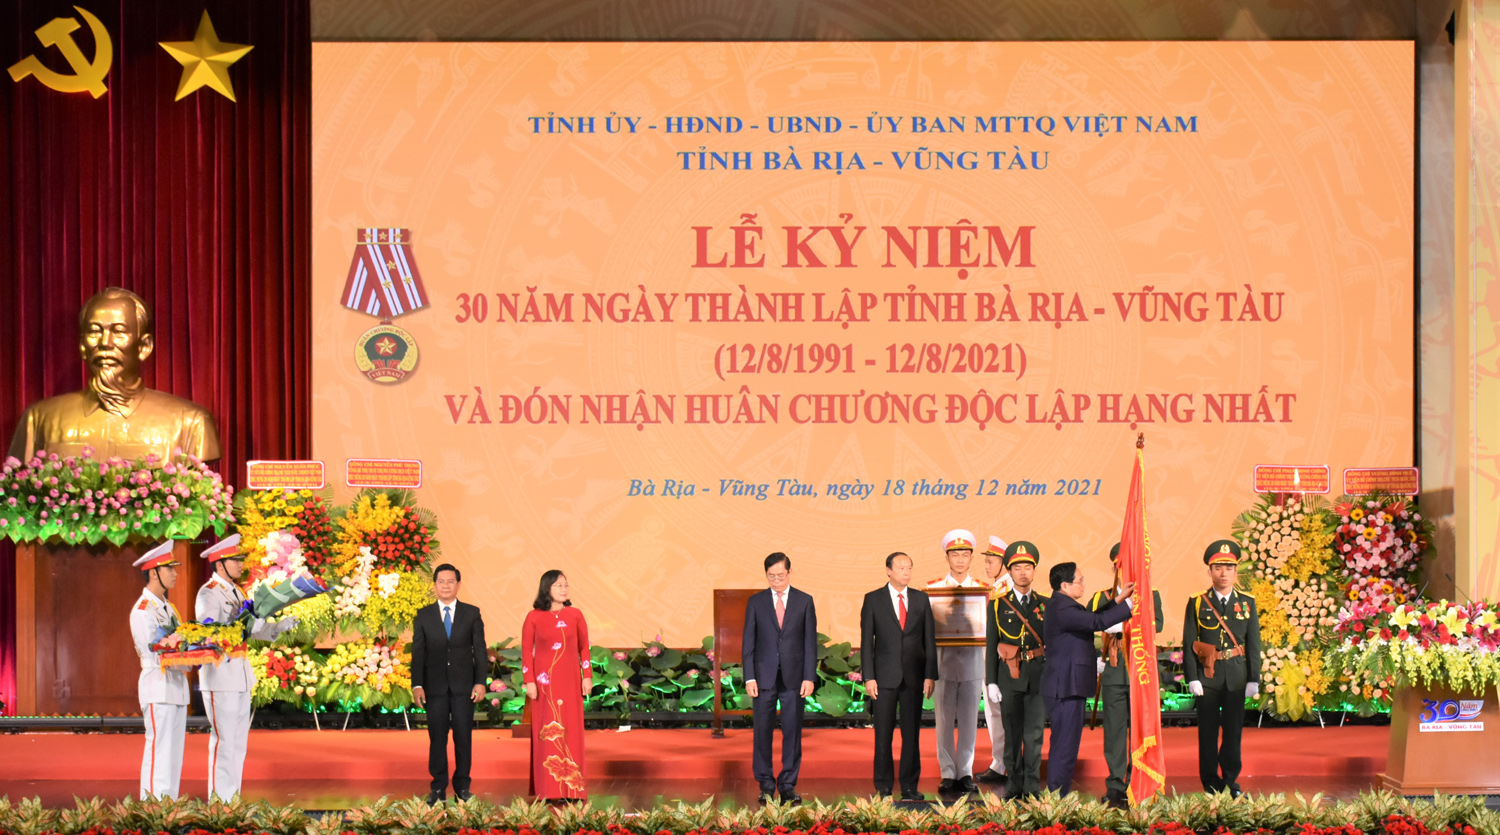 Thủ tướng Phạm Minh Chính: Với sự ra đời của Thủ tướng Phạm Minh Chính, nhà nước đã đưa ra những chính sách mới mang tính cách mạng, đưa Việt Nam tiến tới một tương lai tươi sáng. Hãy cùng xem những hình ảnh mới nhất của người đứng đầu chính phủ Việt Nam.